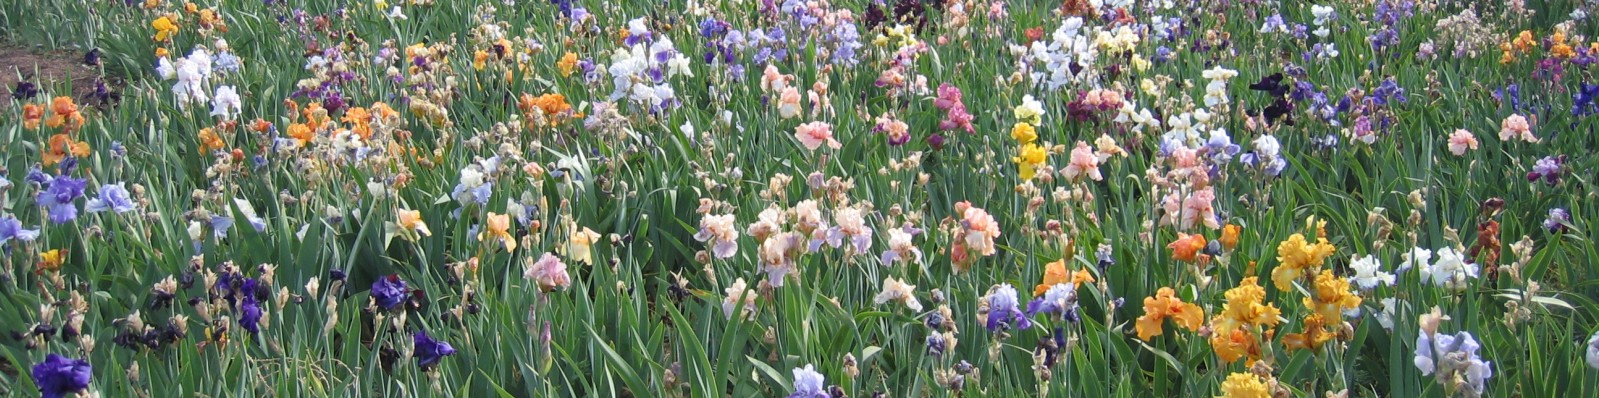 Rosemary's Iris garden